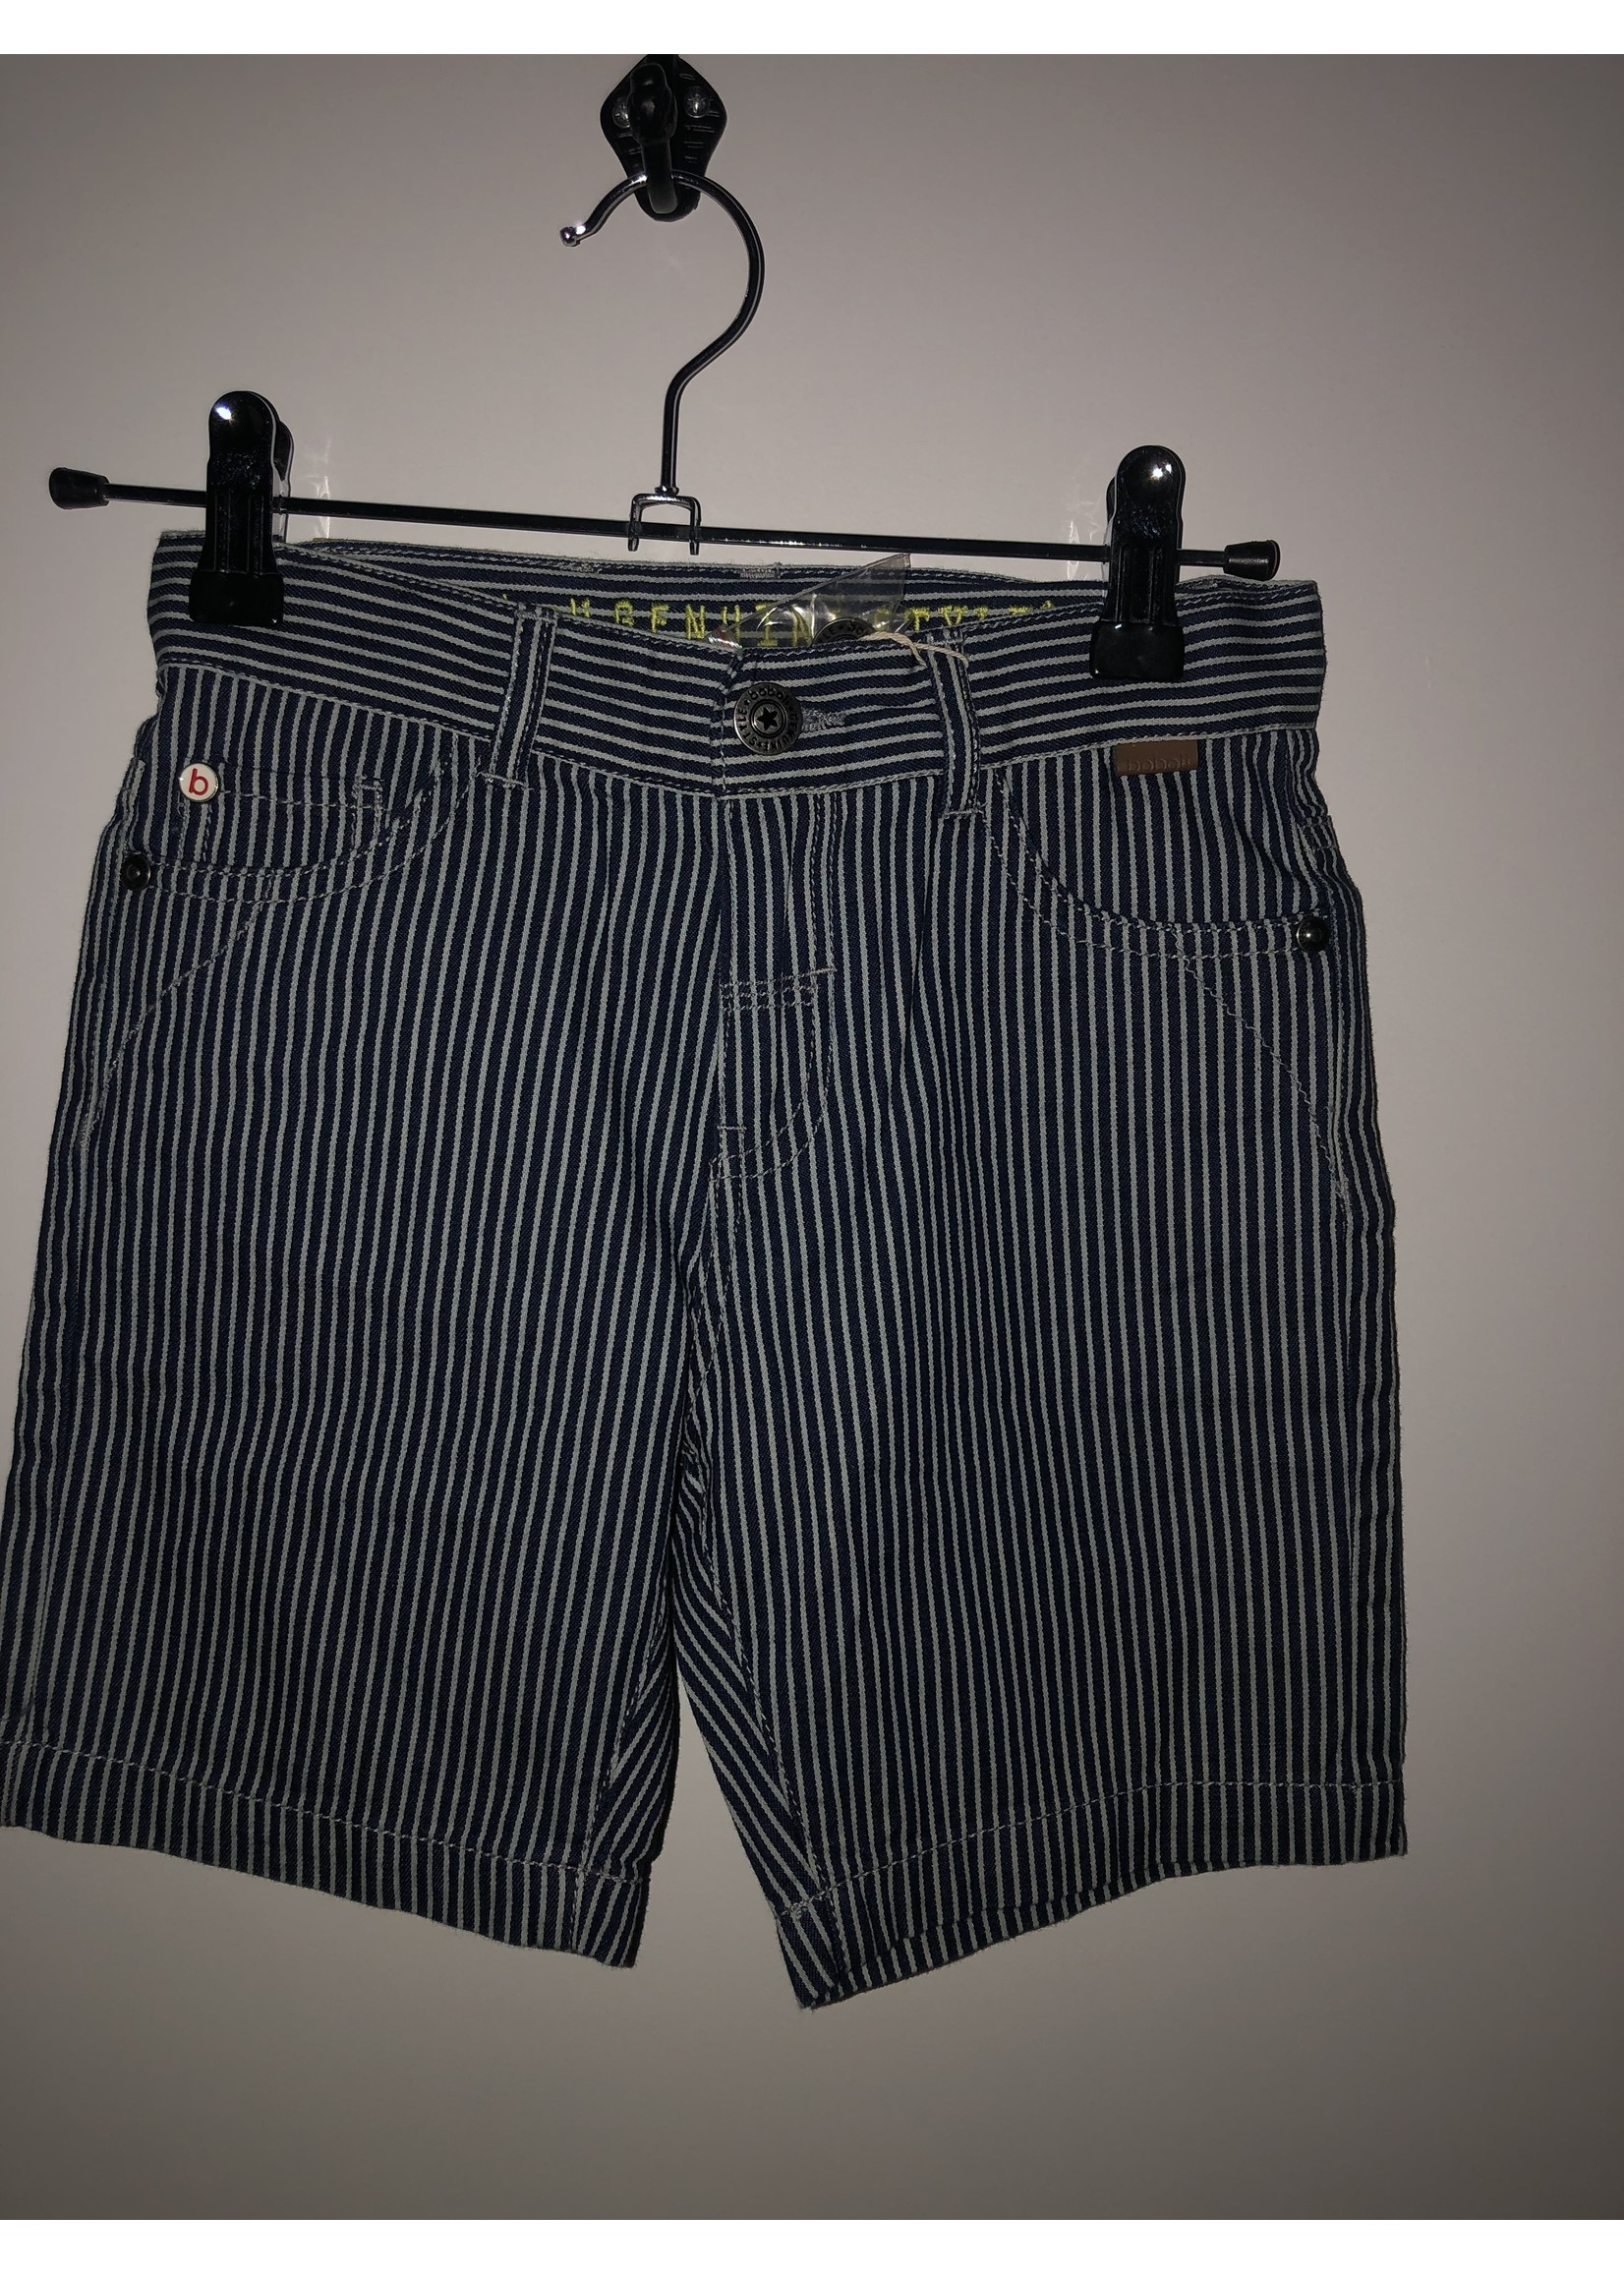 Boboli Boboli Denim bermuda shorts striped for boy stripes 502108